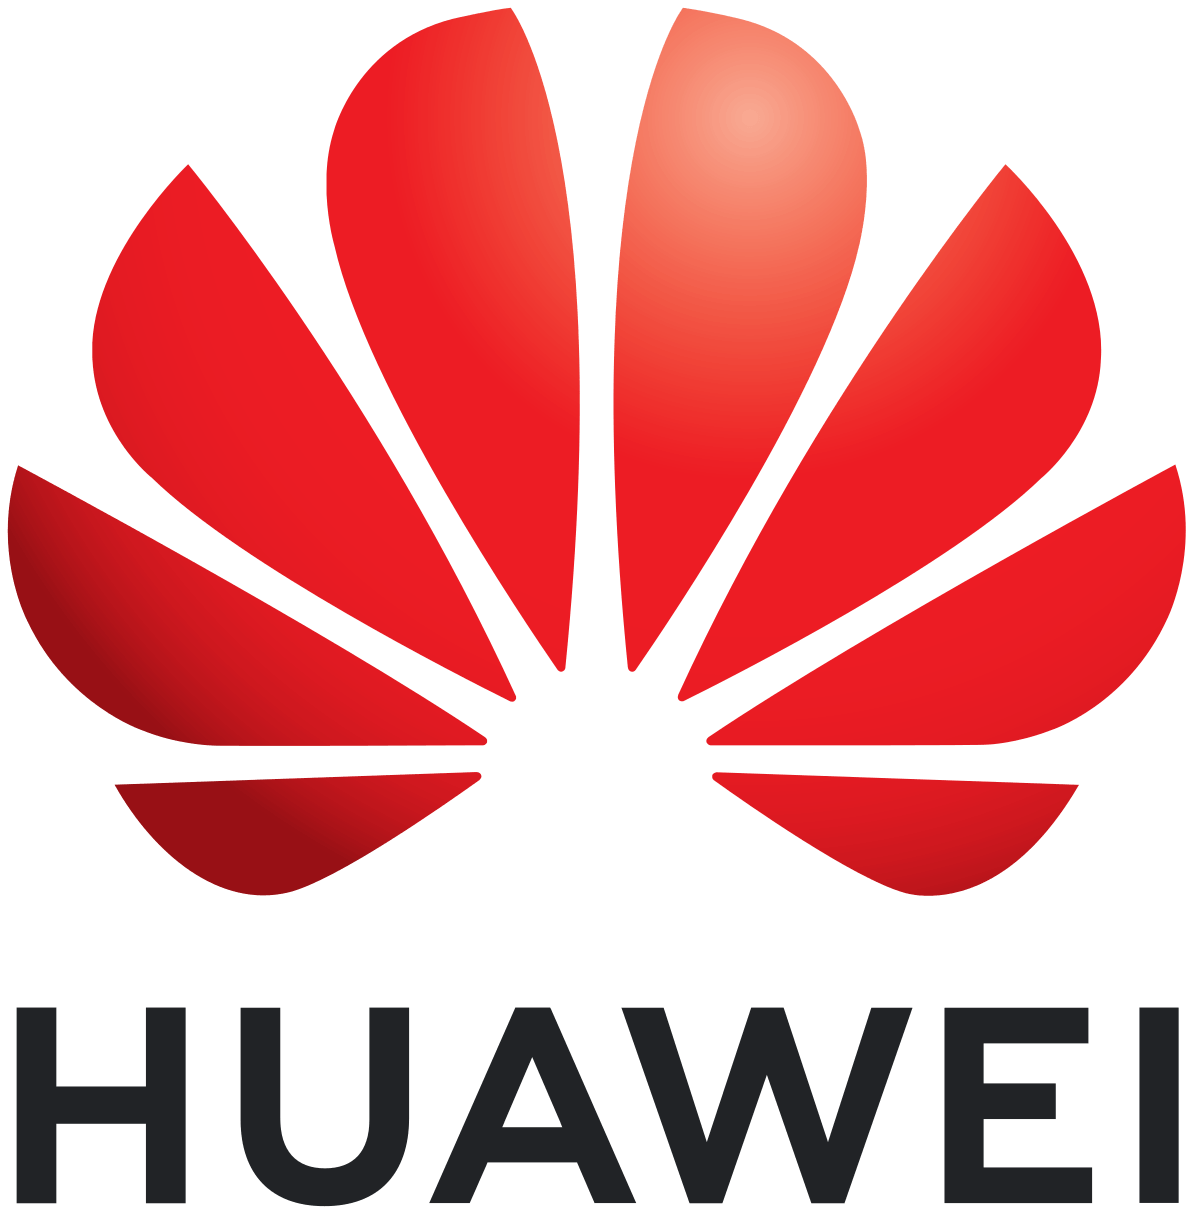 British Mobile Phone Manufacturer Logo - Huawei